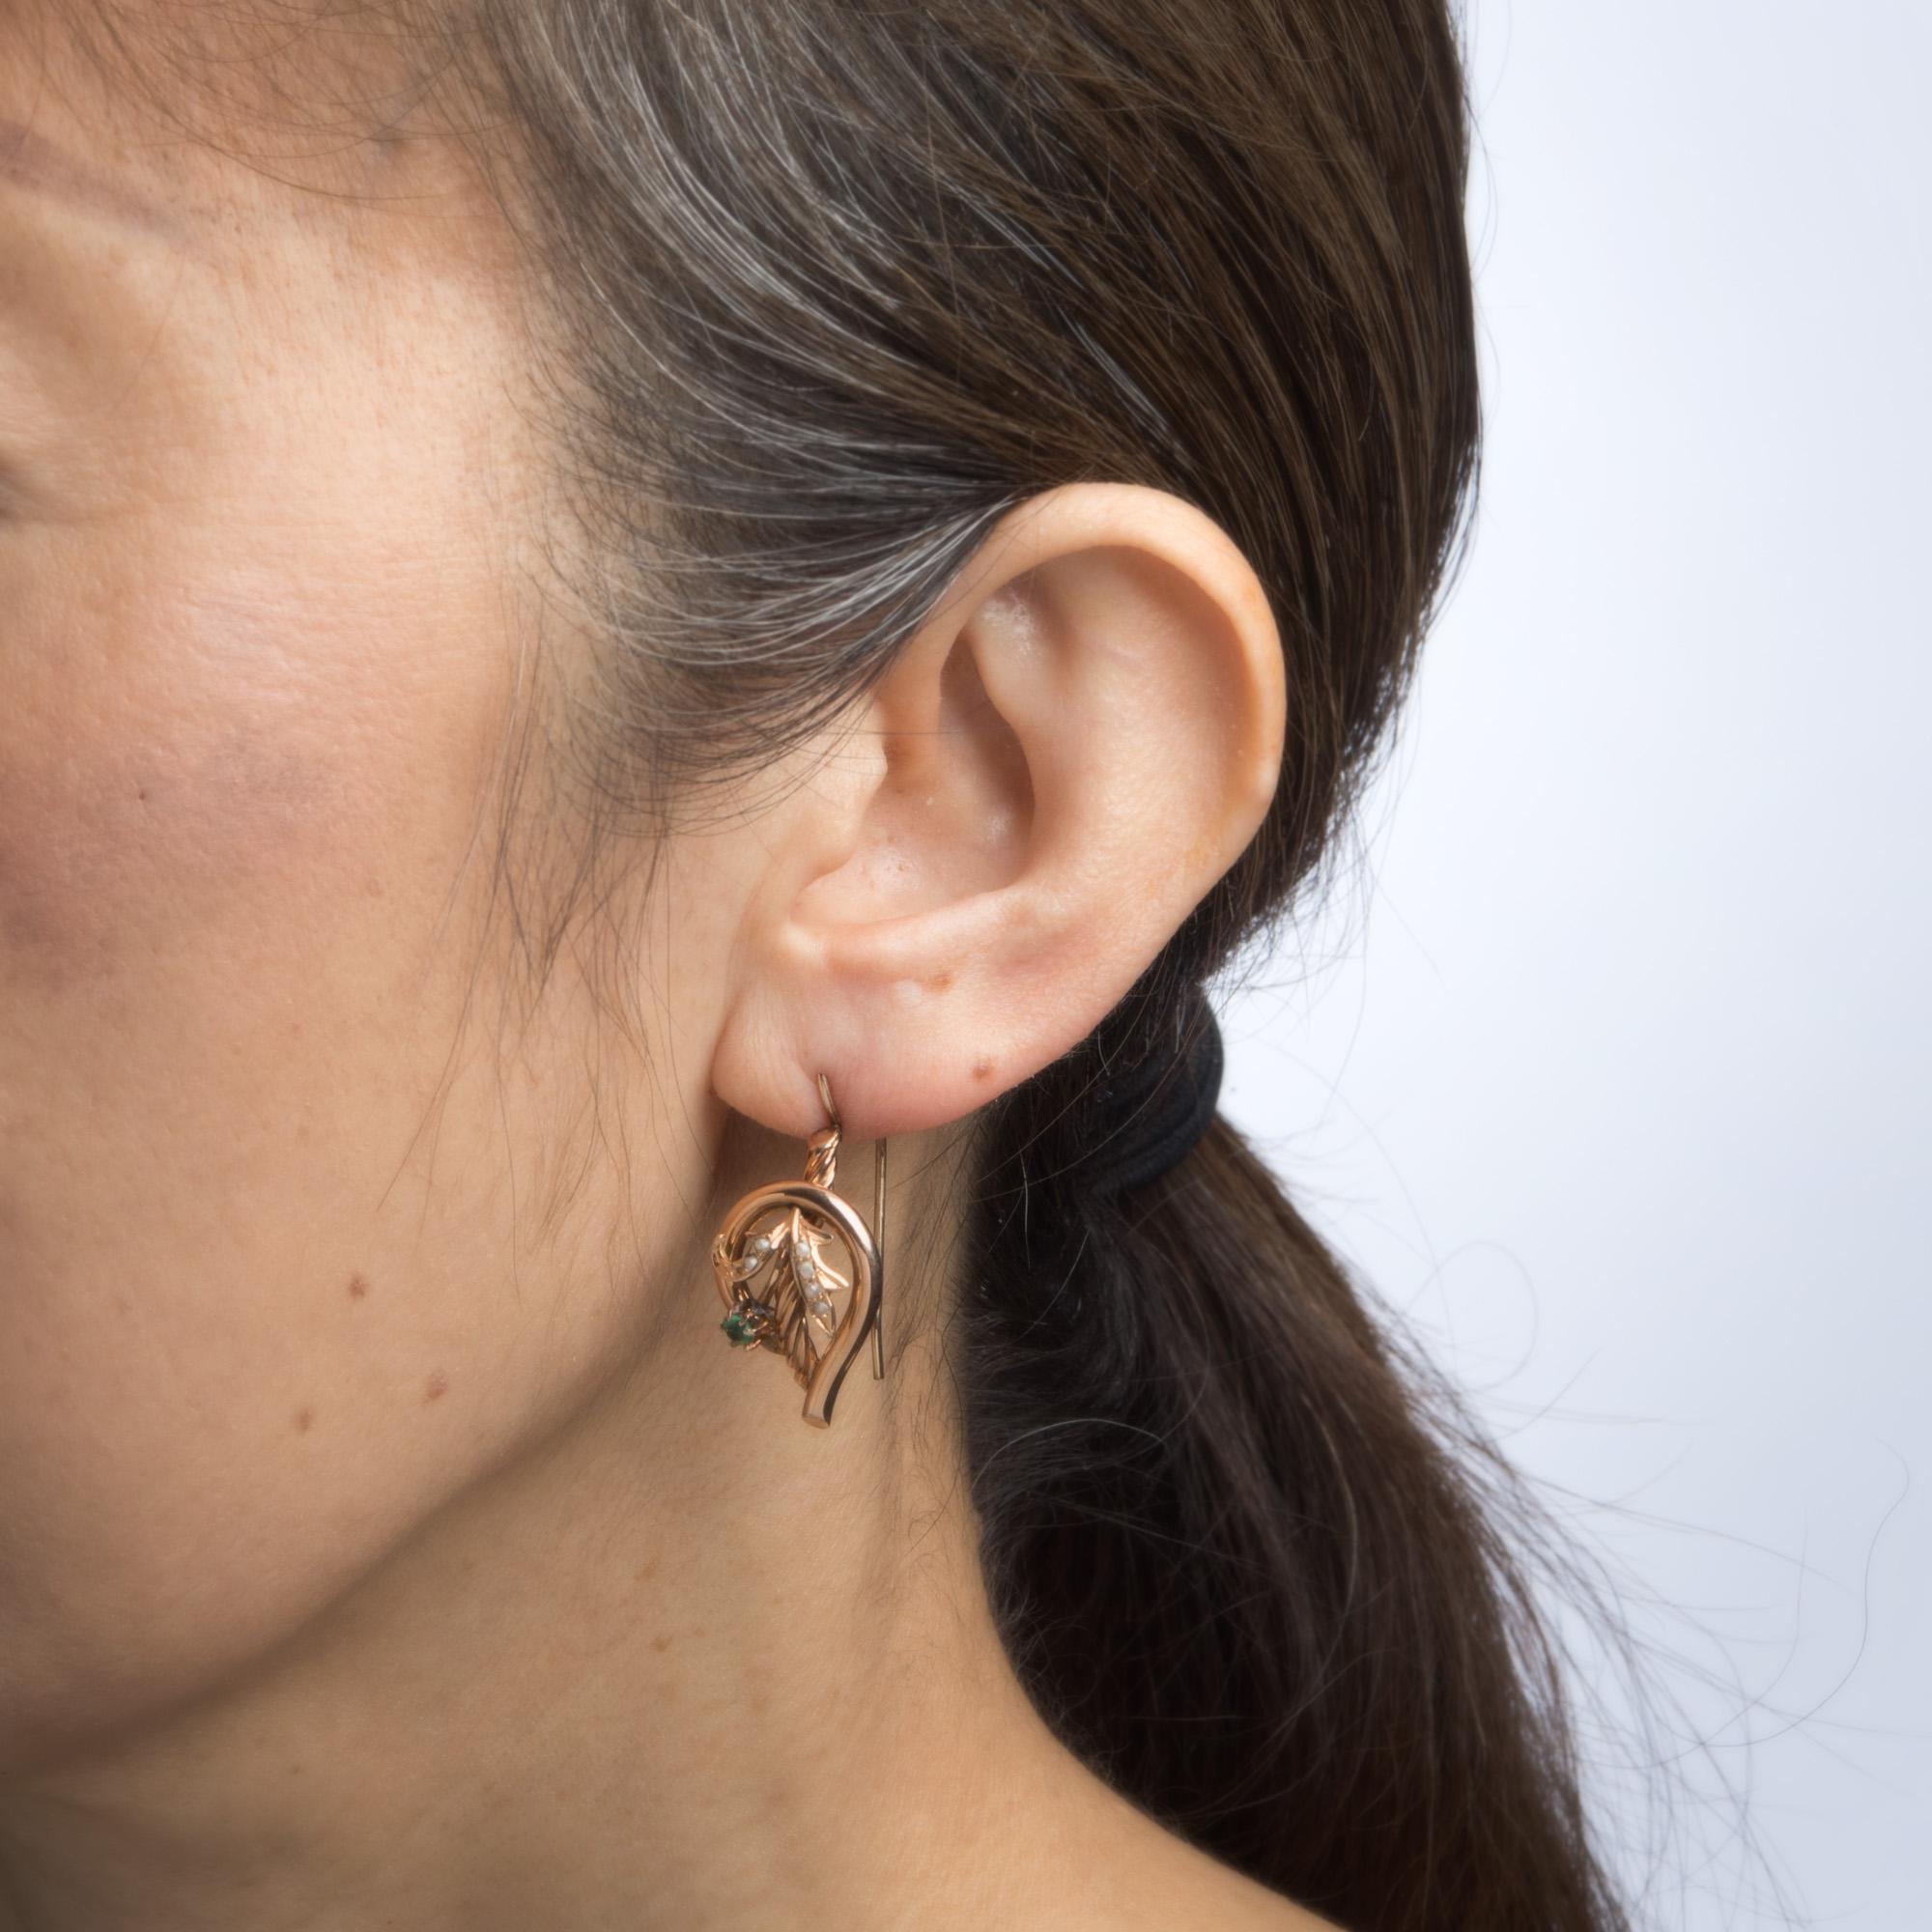 10 karat gold earrings